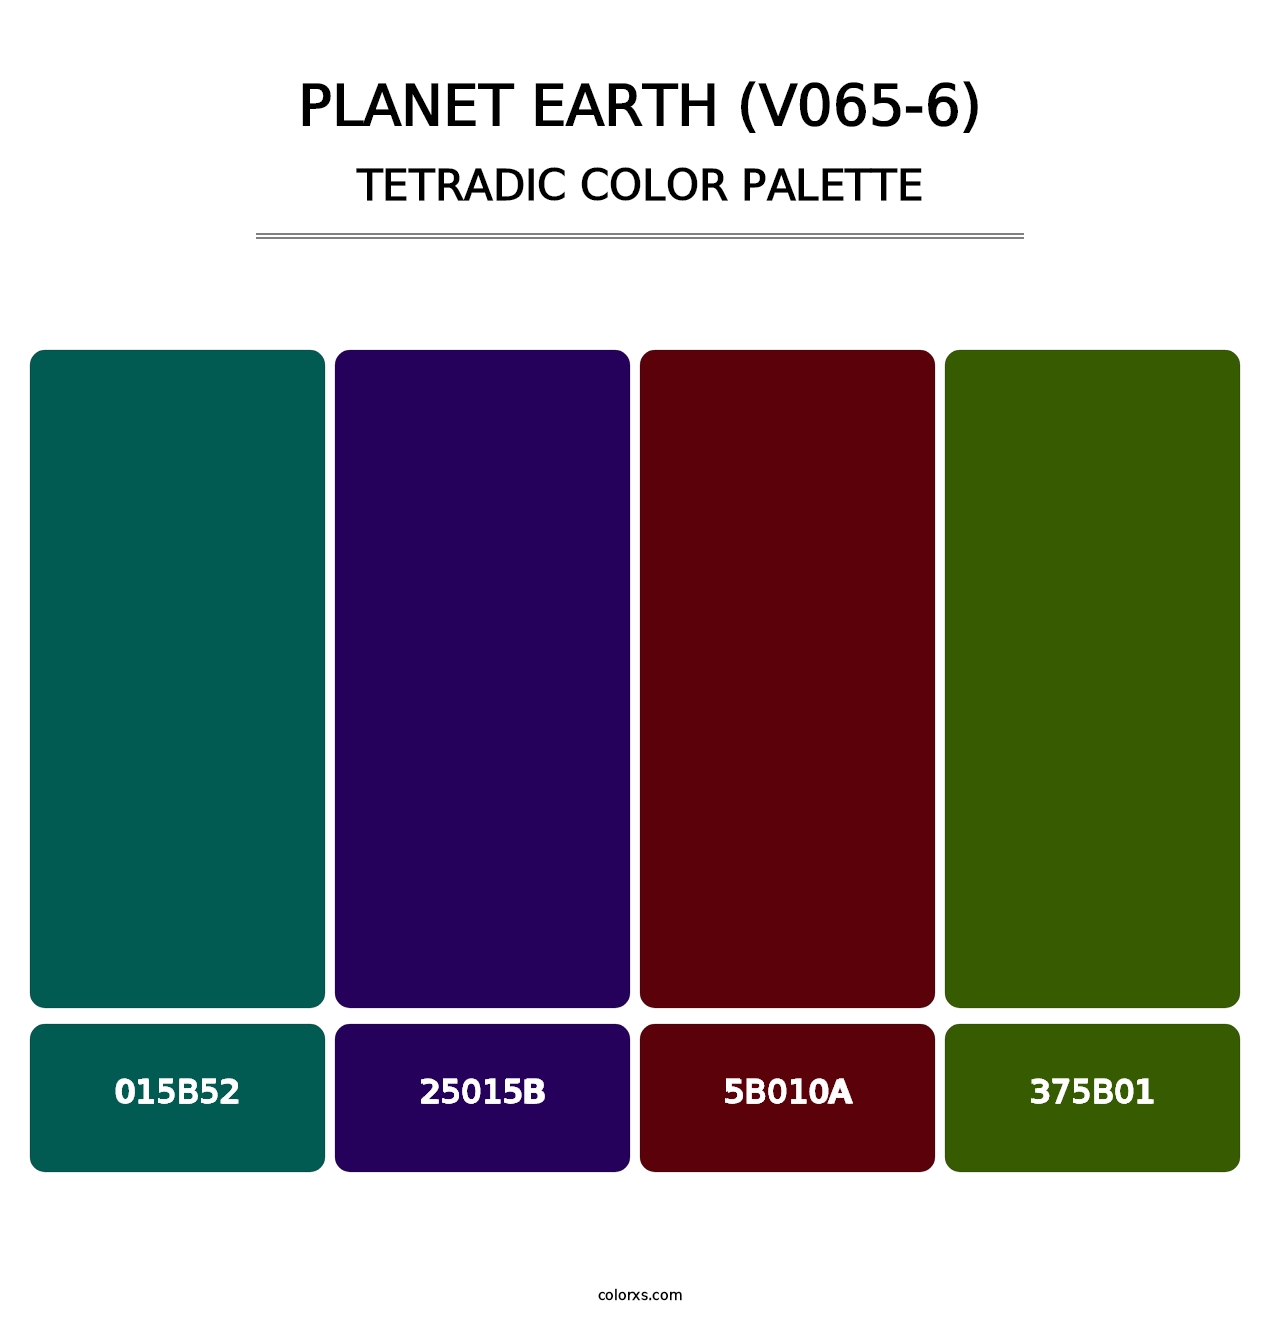 Planet Earth (V065-6) - Tetradic Color Palette